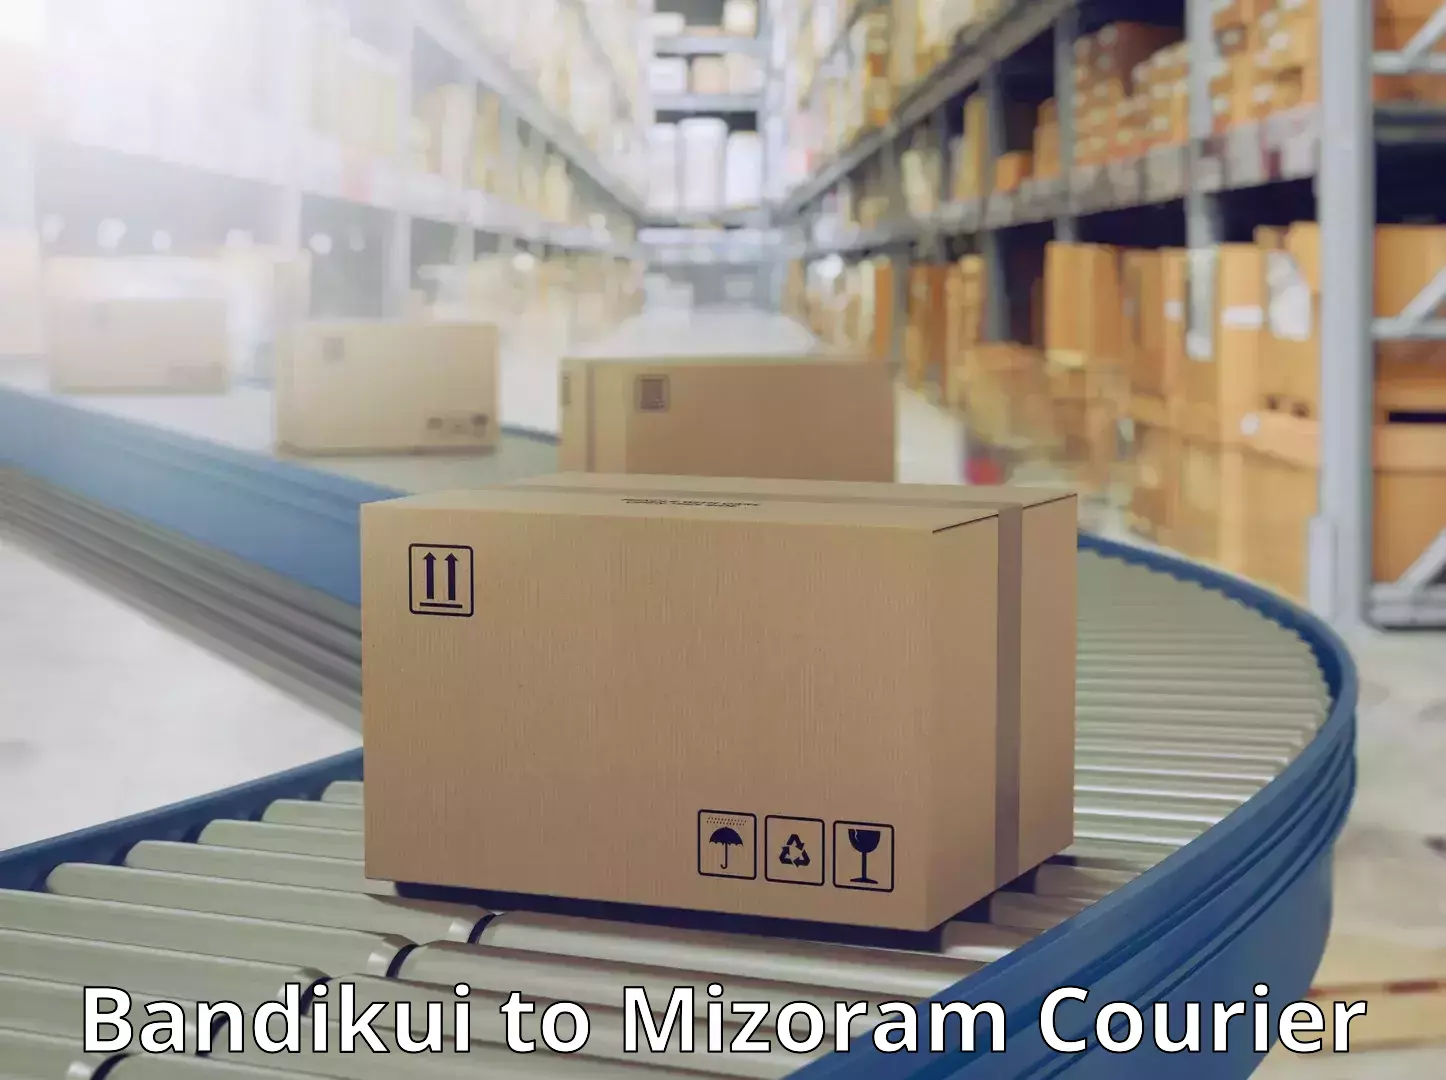 Door-to-door freight service Bandikui to Mizoram